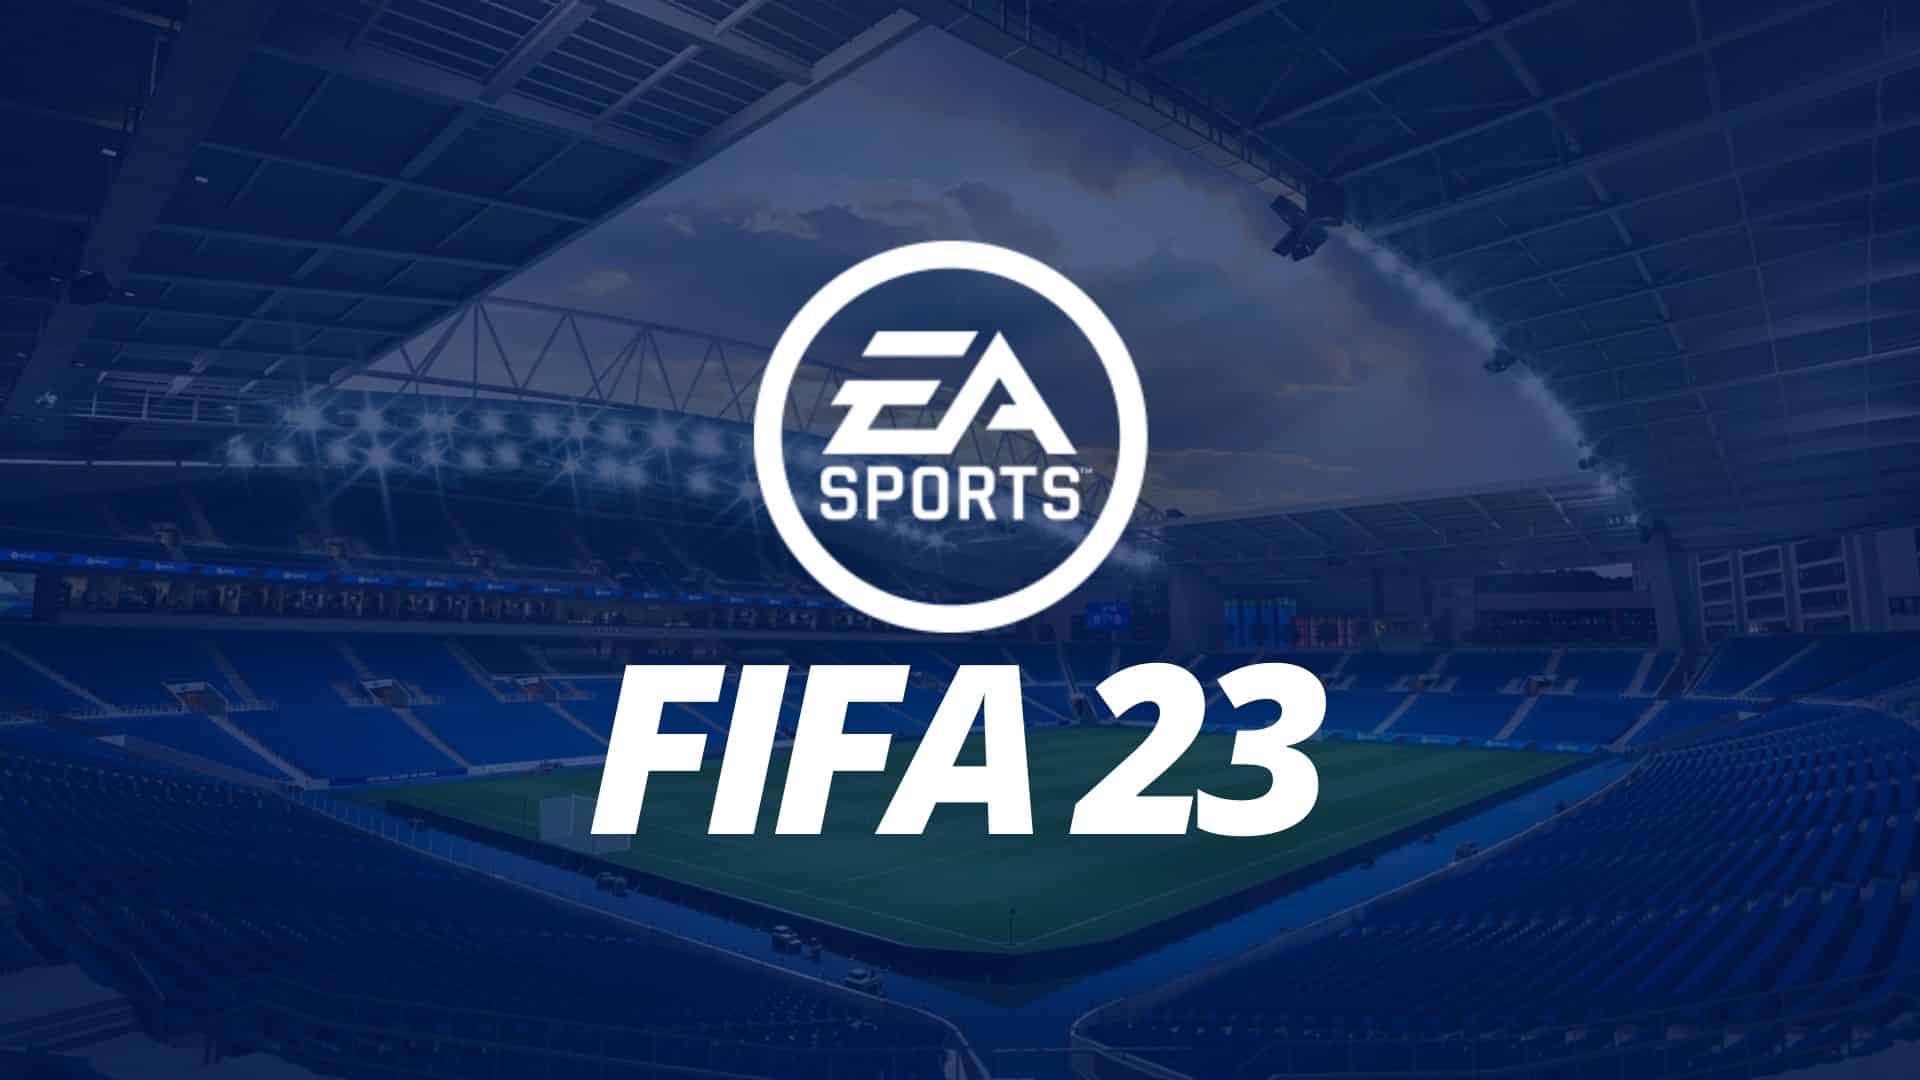 لوگوی پرطرفدار FIFA 23 با کیفیت عالی برای چاپ پیکسل